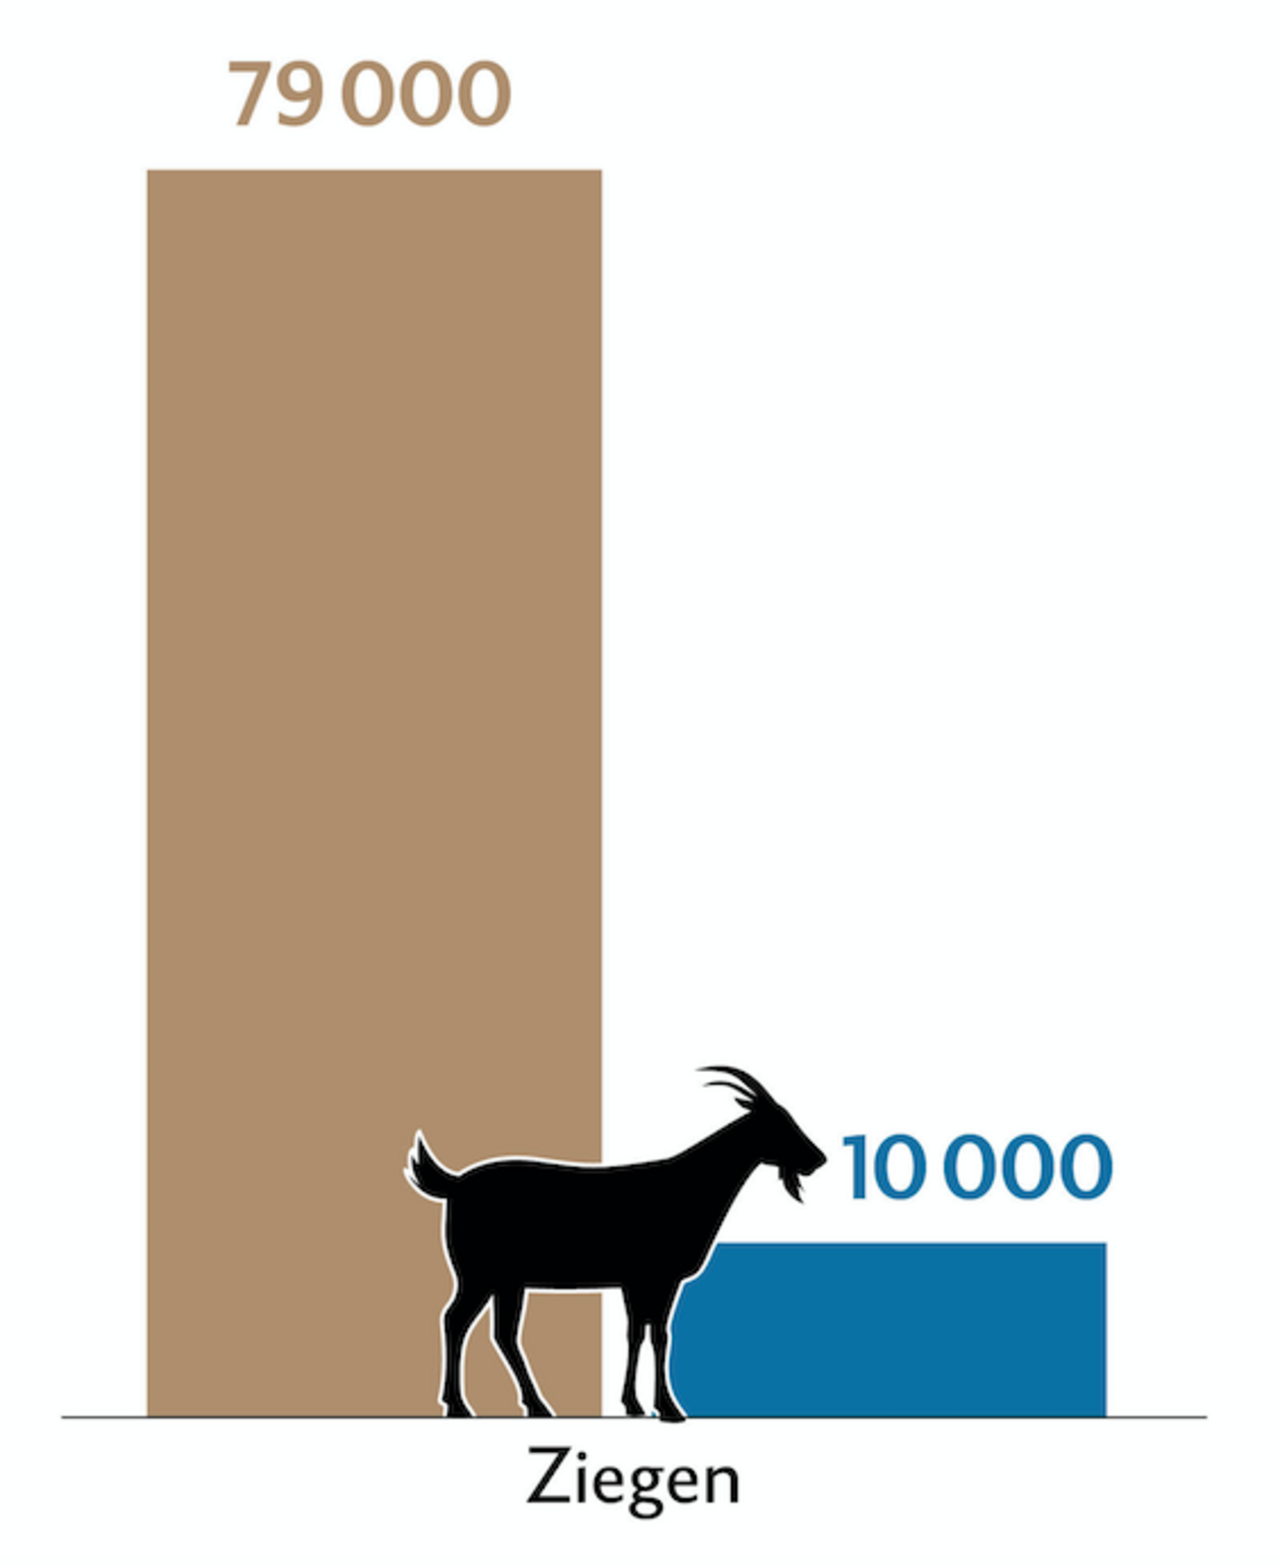 Balkendiagramm zeigt die Tierzahlen (braun) und Behandlungszahlen (blau) der Ziegen in der Schweiz.